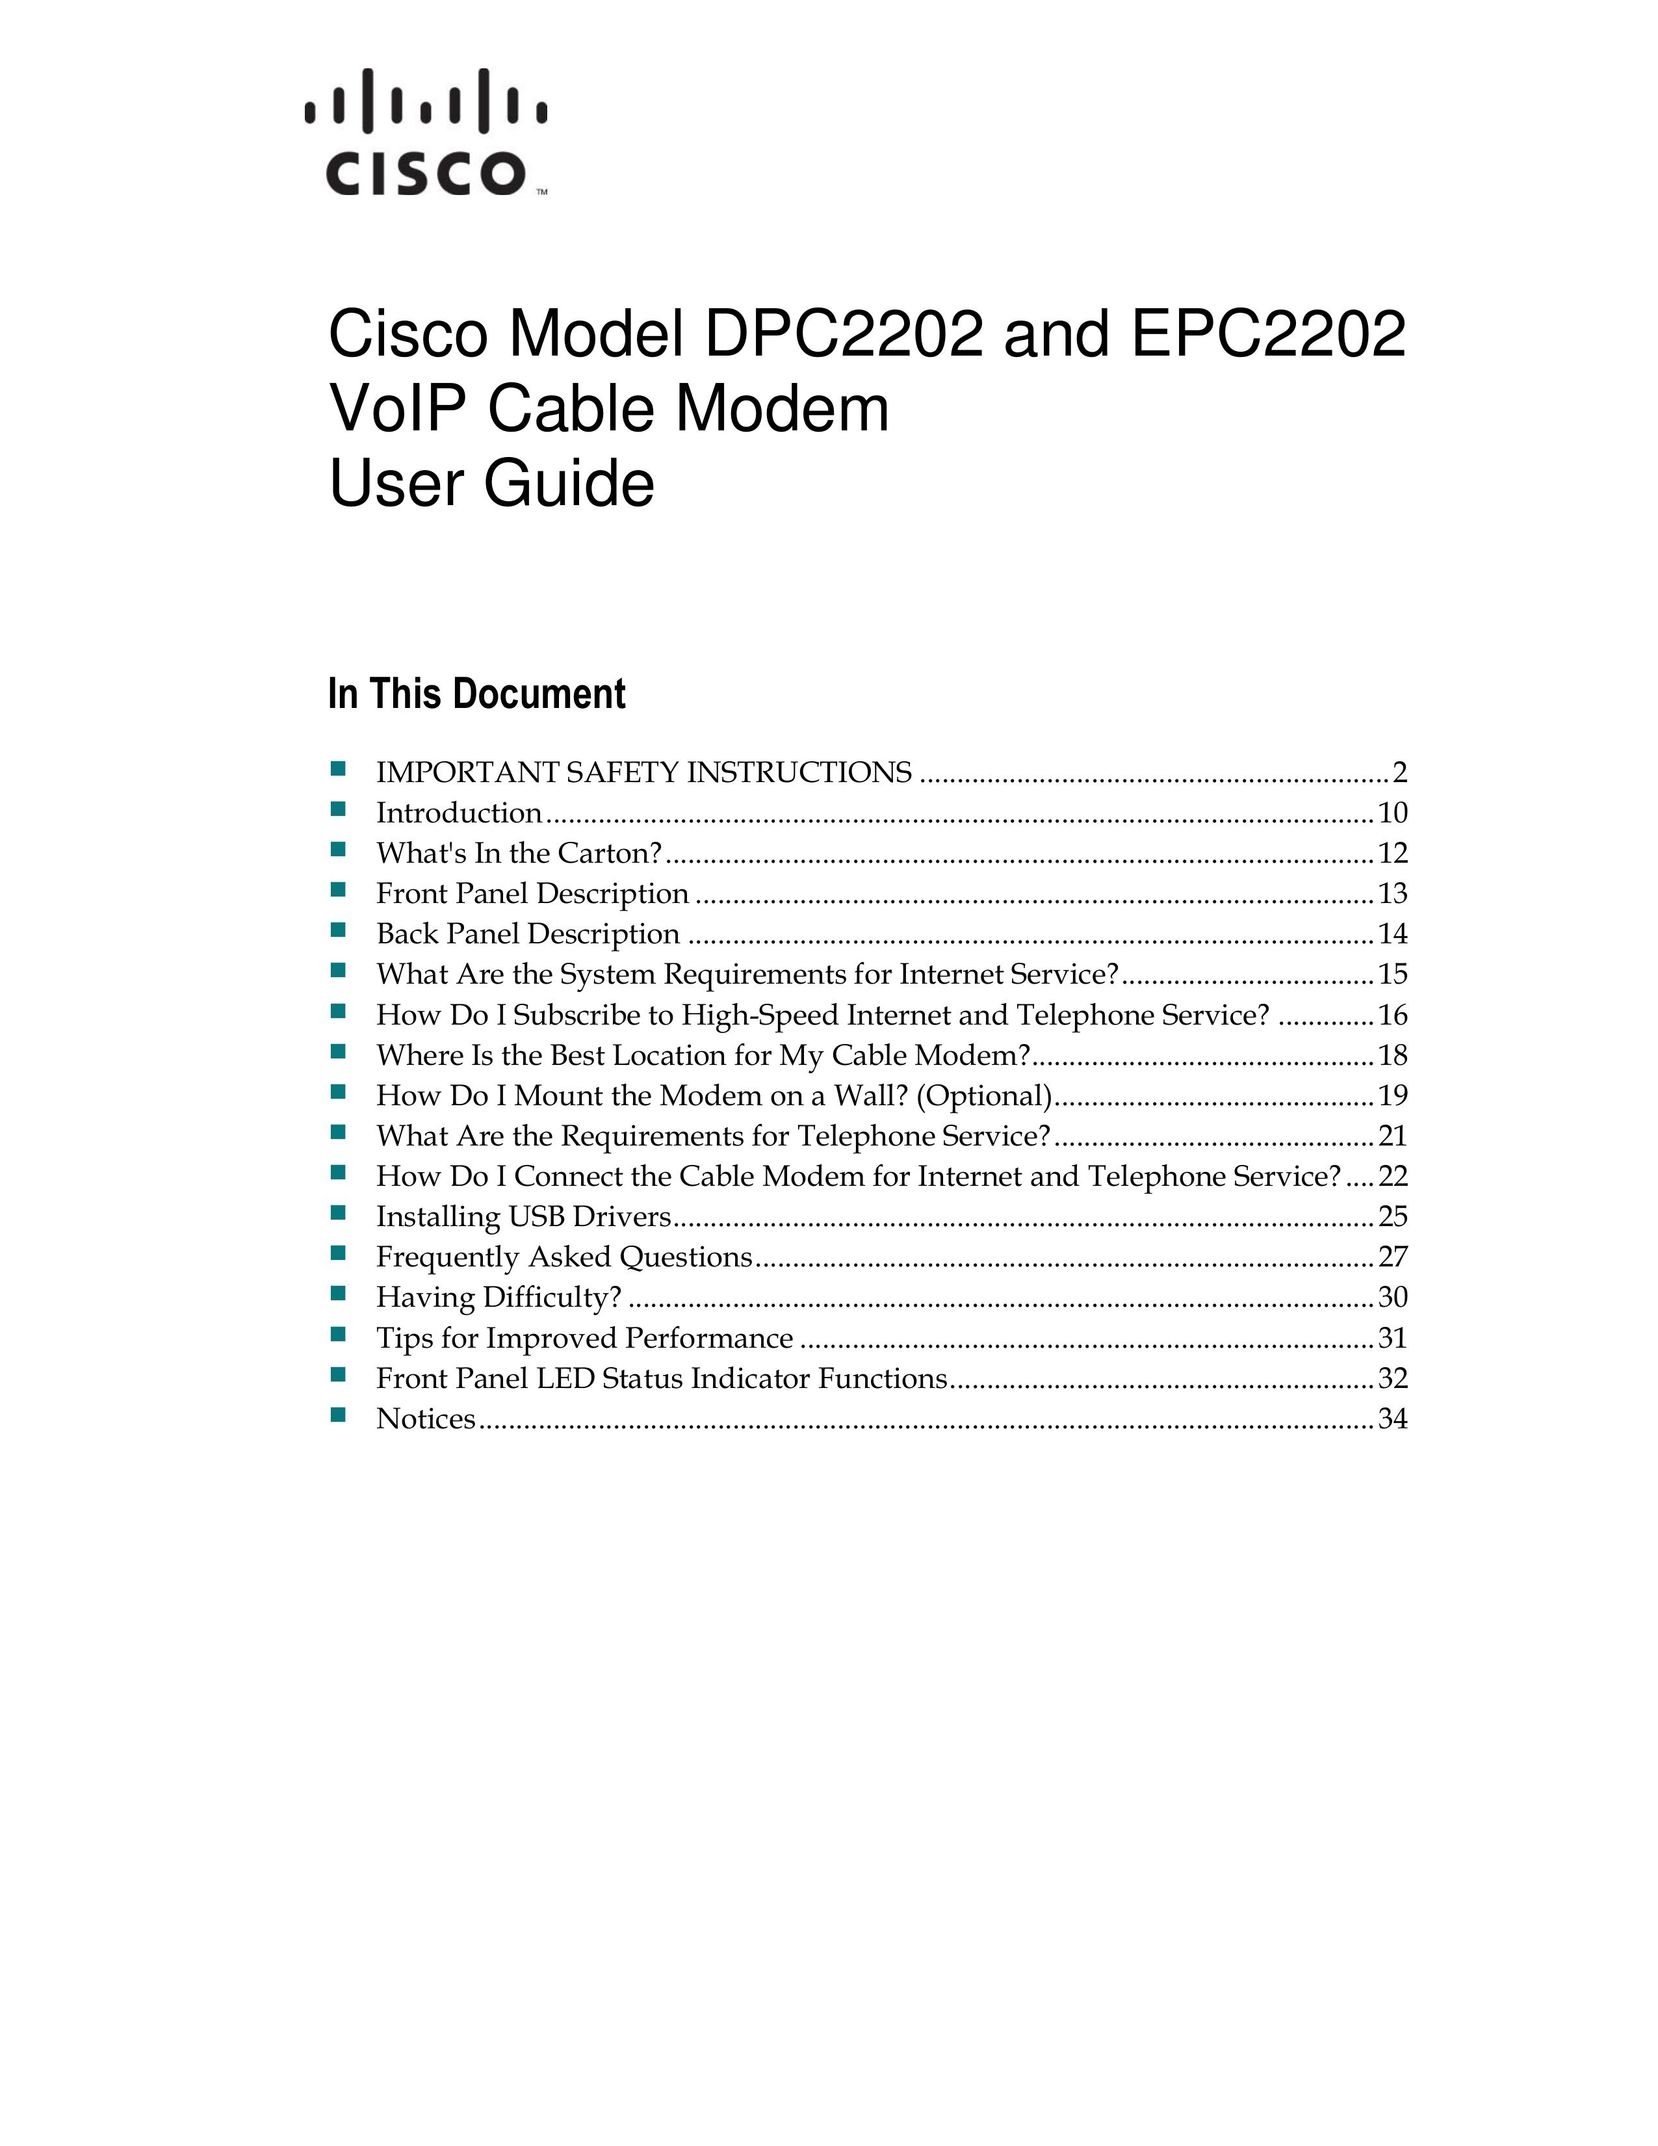 Cisco Systems EPC2202 Modem User Manual